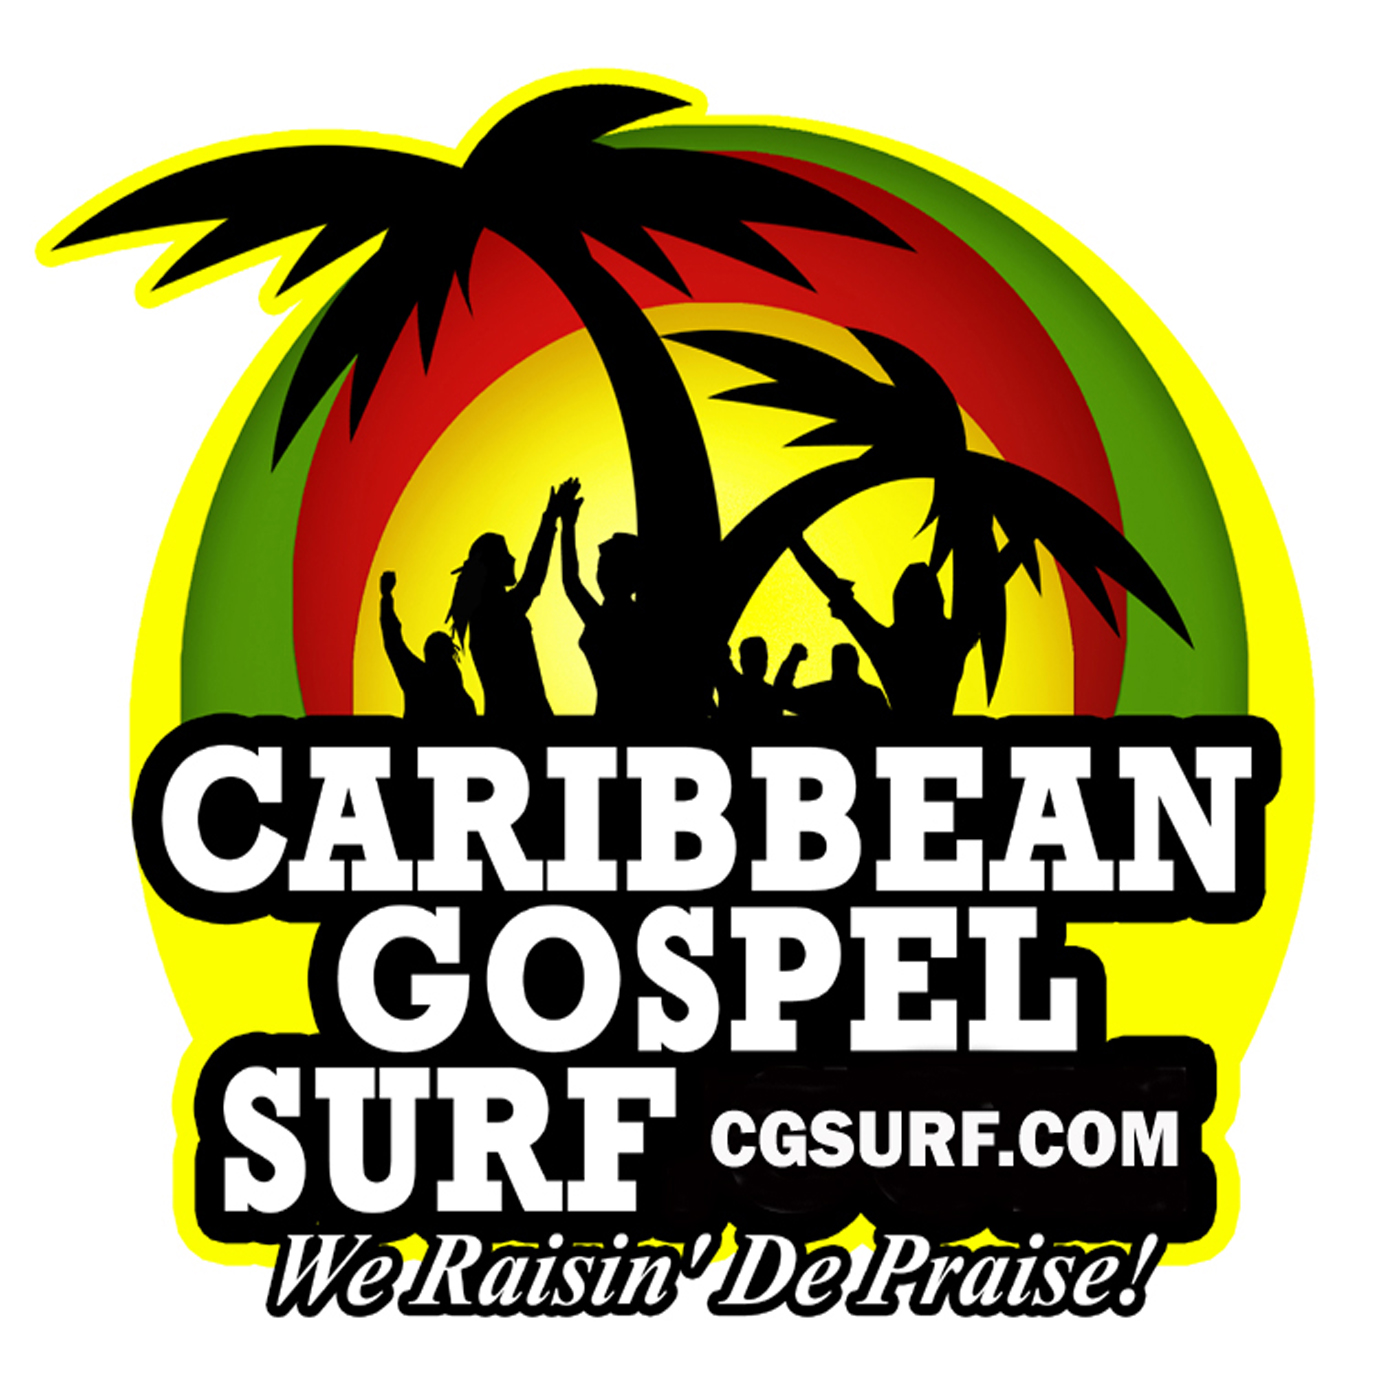 CARIBBEAN GOSPEL SURF